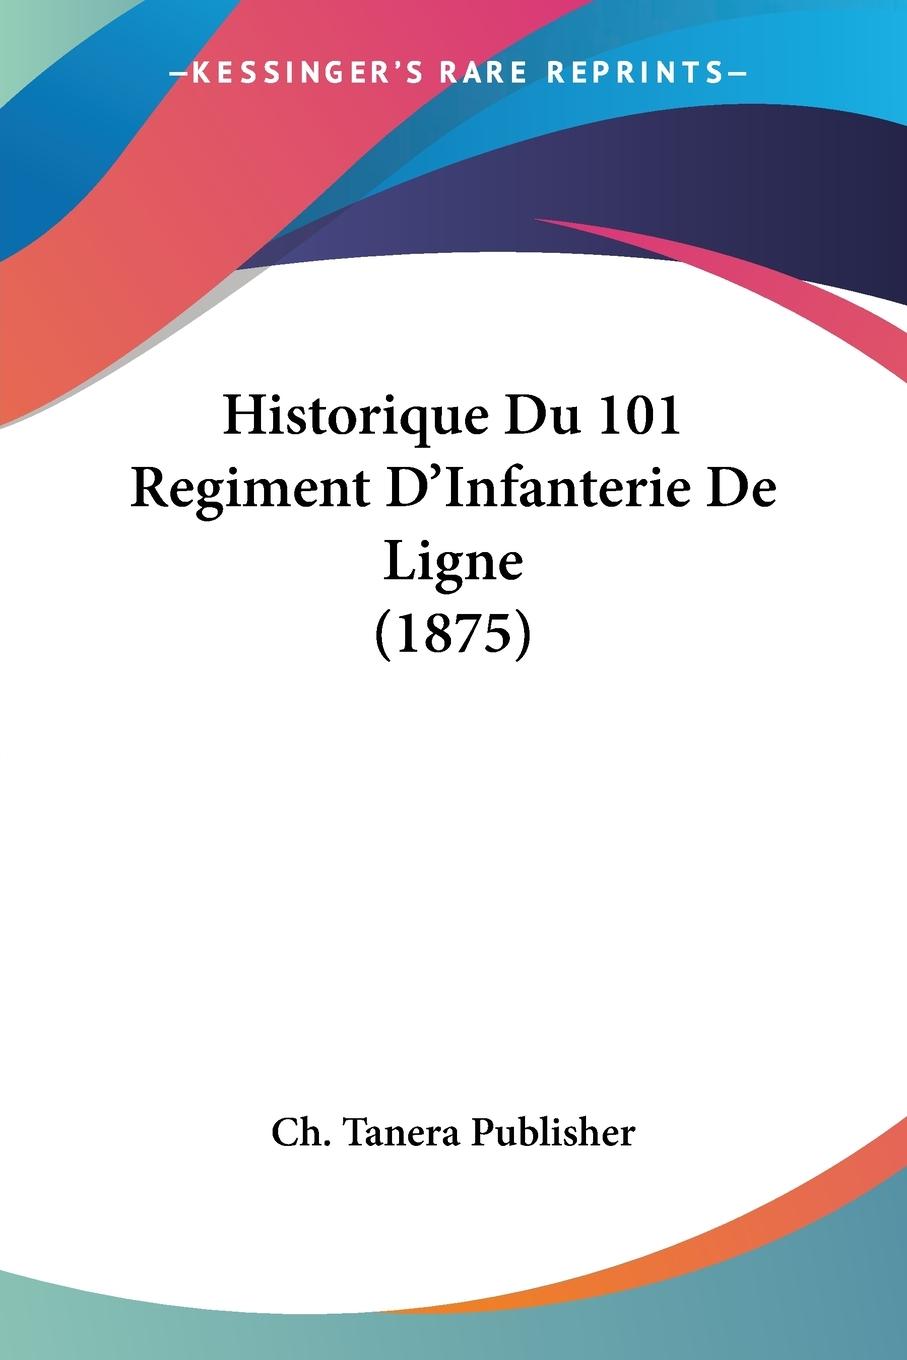 Historique Du 101 Regiment D Infanterie De Ligne (1875) - Ch. Tanera Publisher